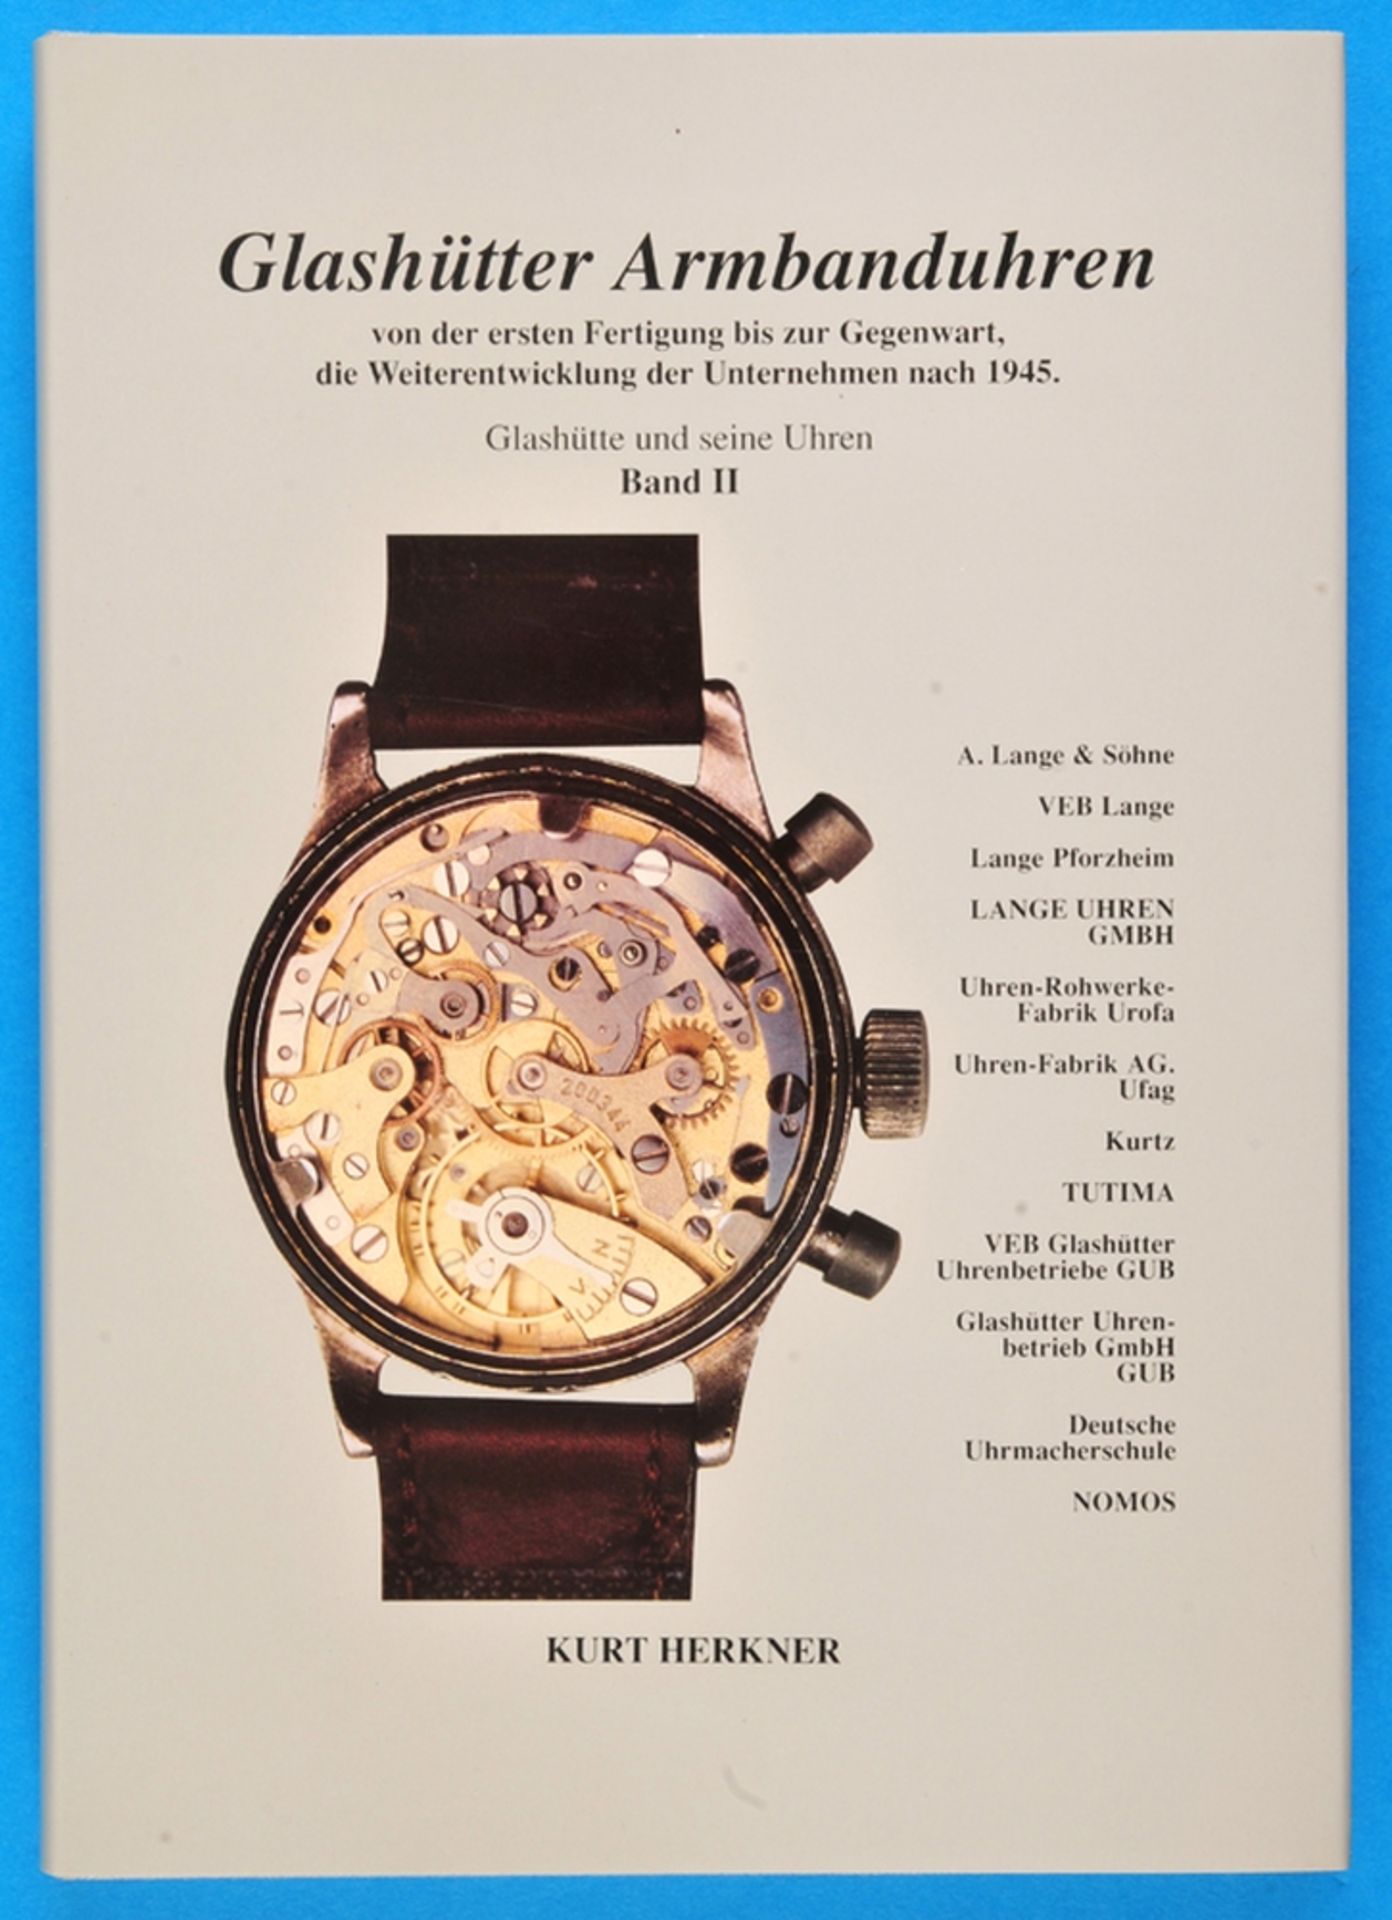 Kurt Herkner, Glashütter Armbanduhren - von der ersten Fertigung bis zur Gegenwart, die Weiterentwic